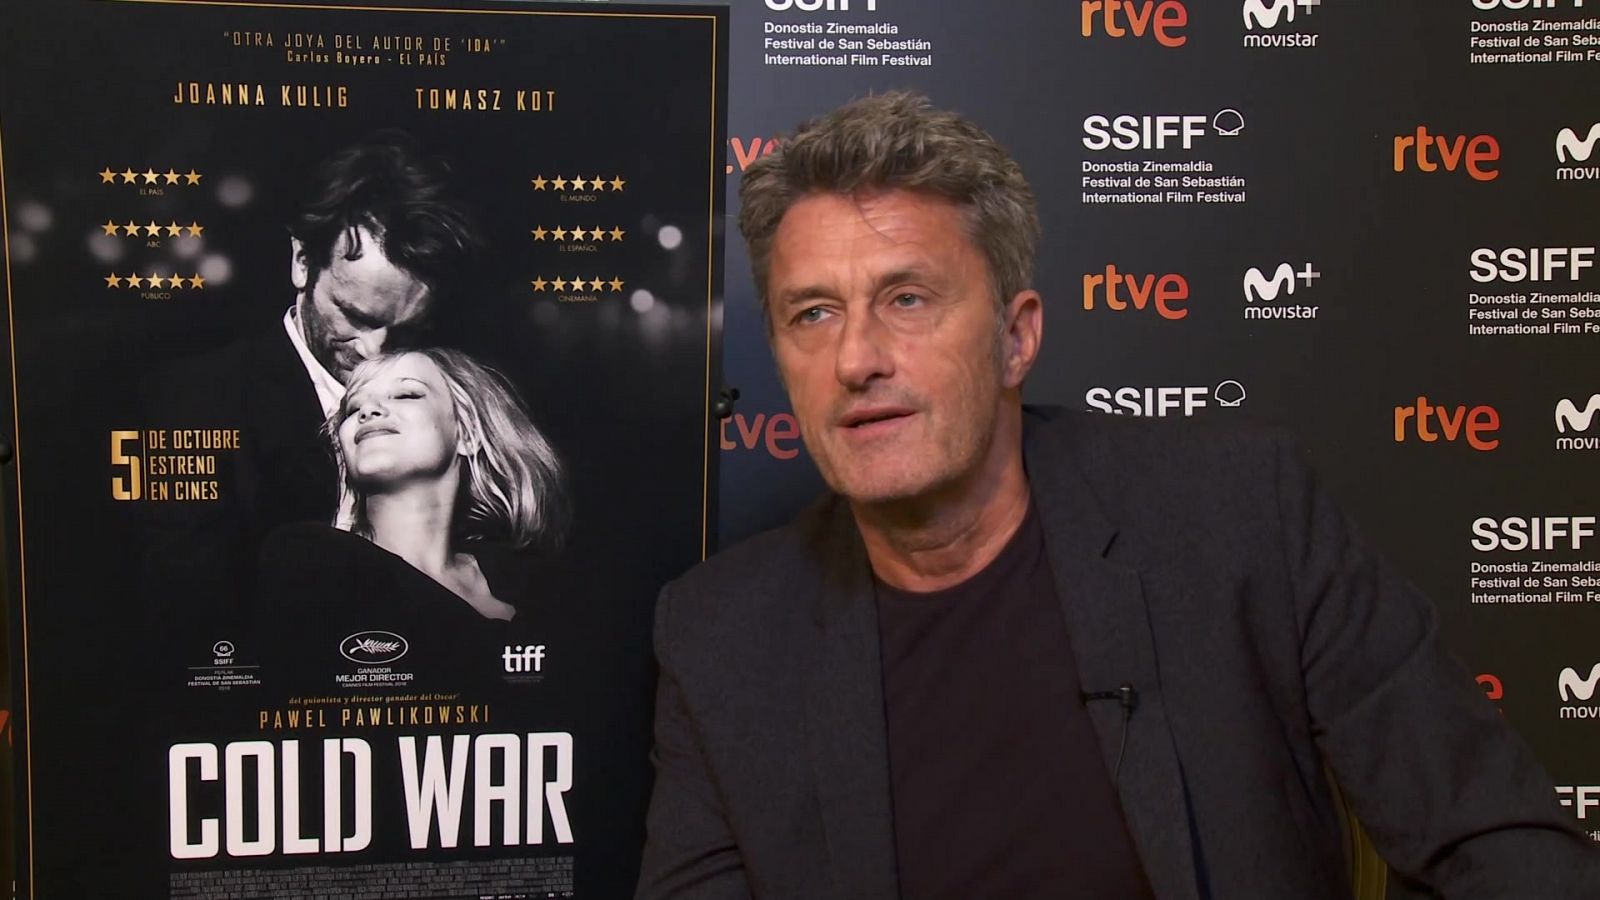 El cine de La 2 - Cold war (presentación) - RTVE.es